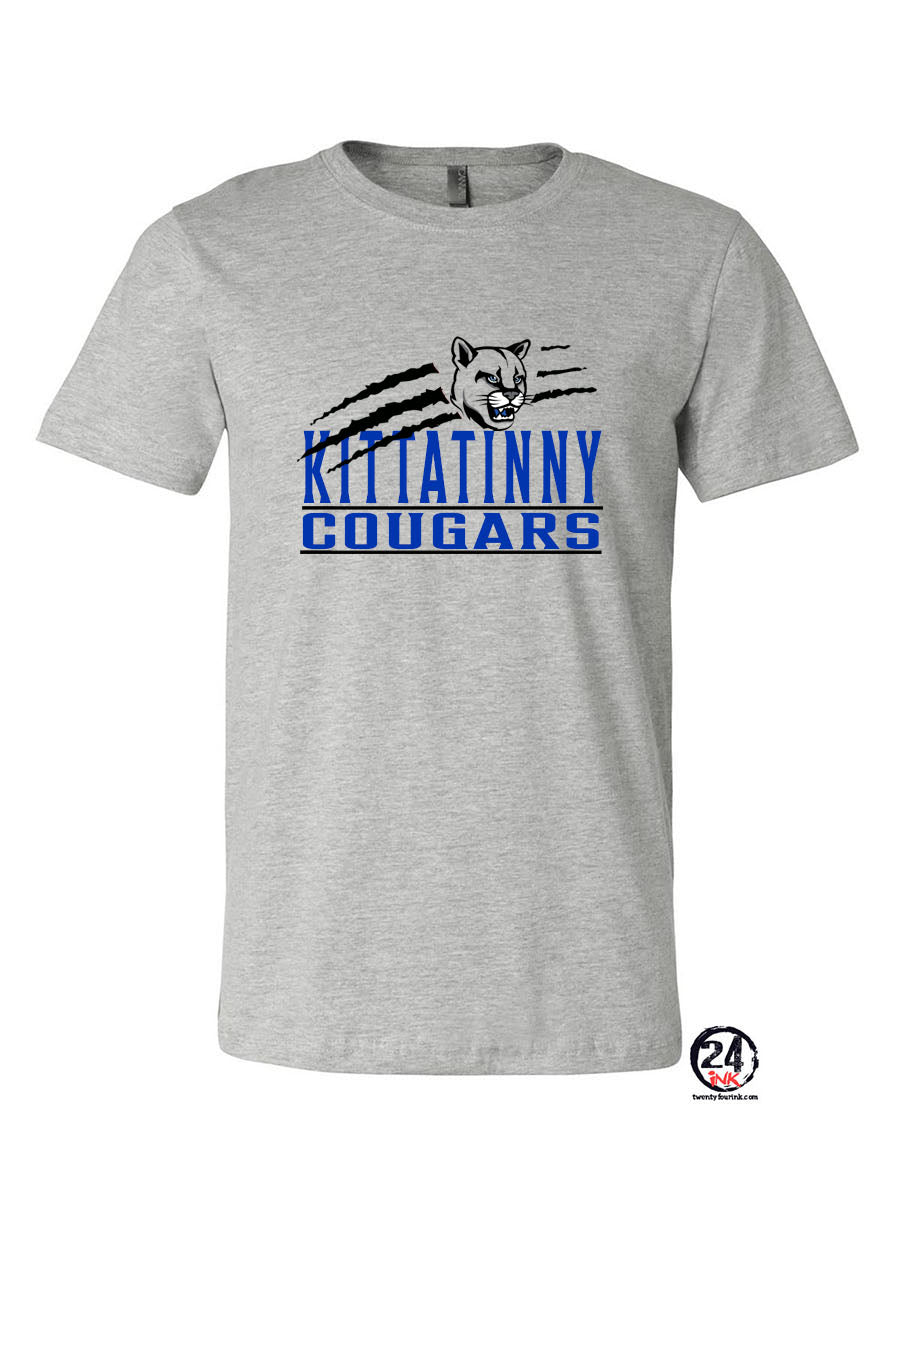 KRHS design 16 T-Shirt